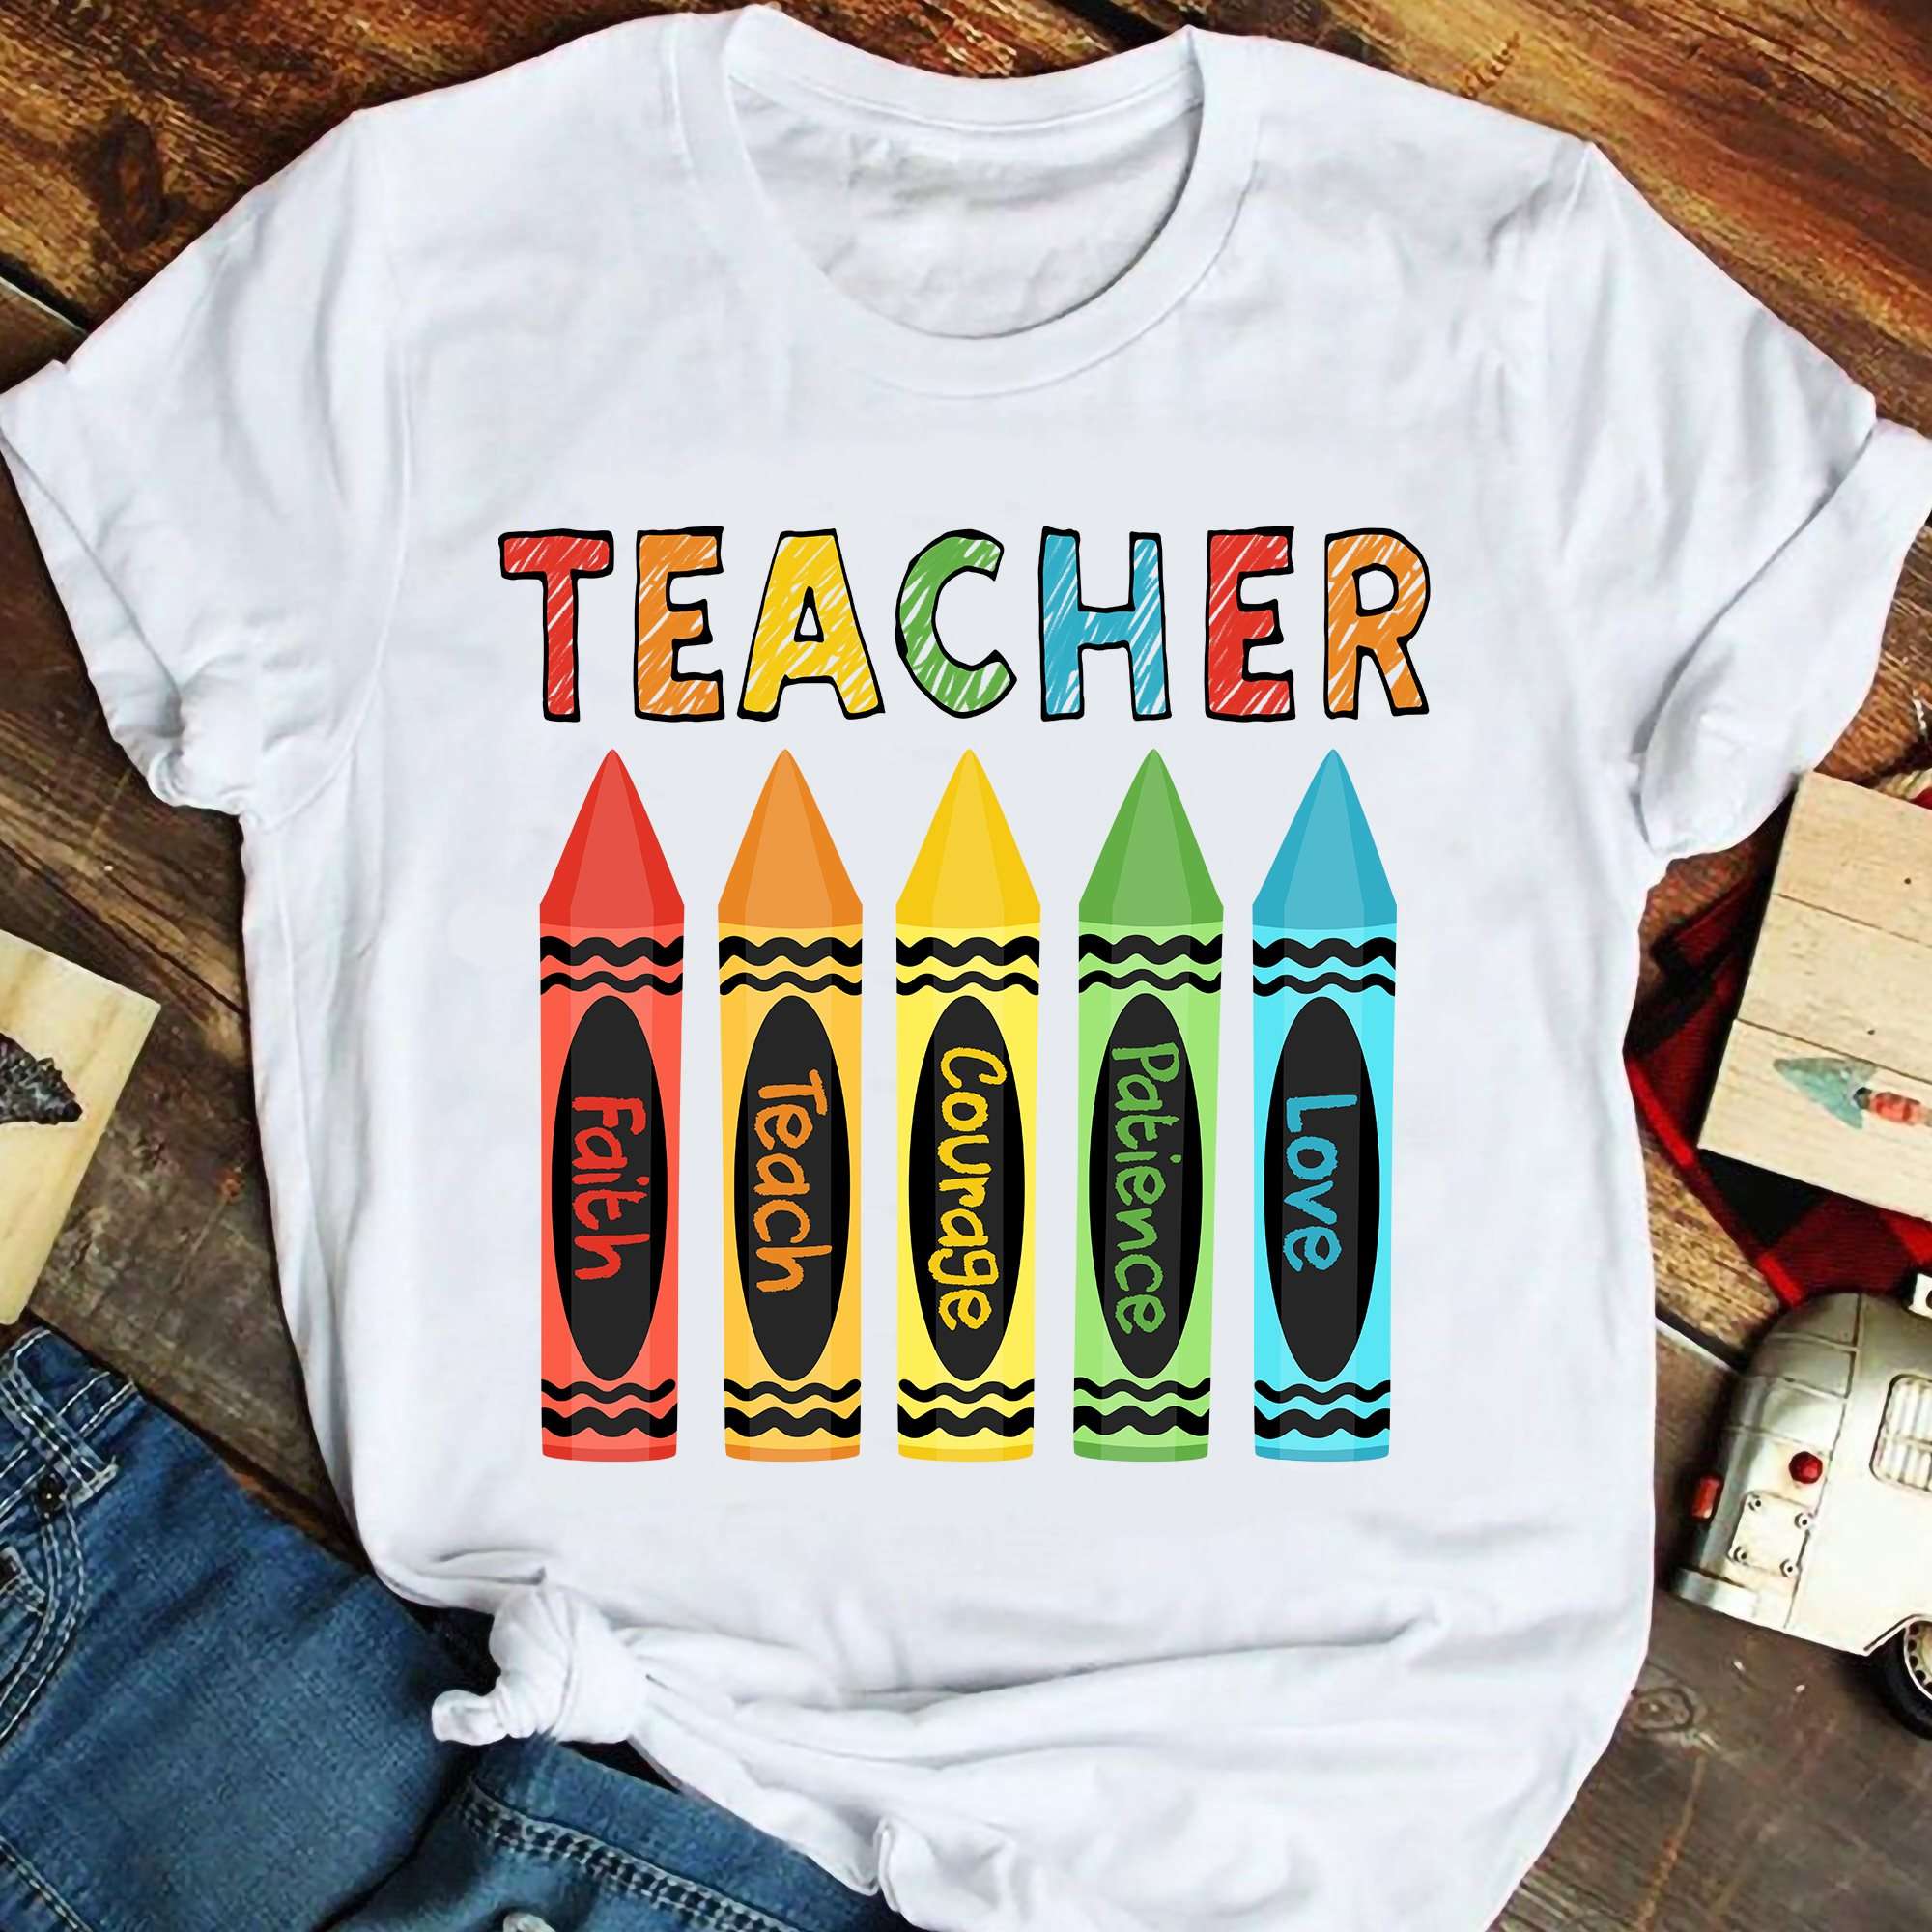 Crayon Teacher - Teacher love patience courage teach faith